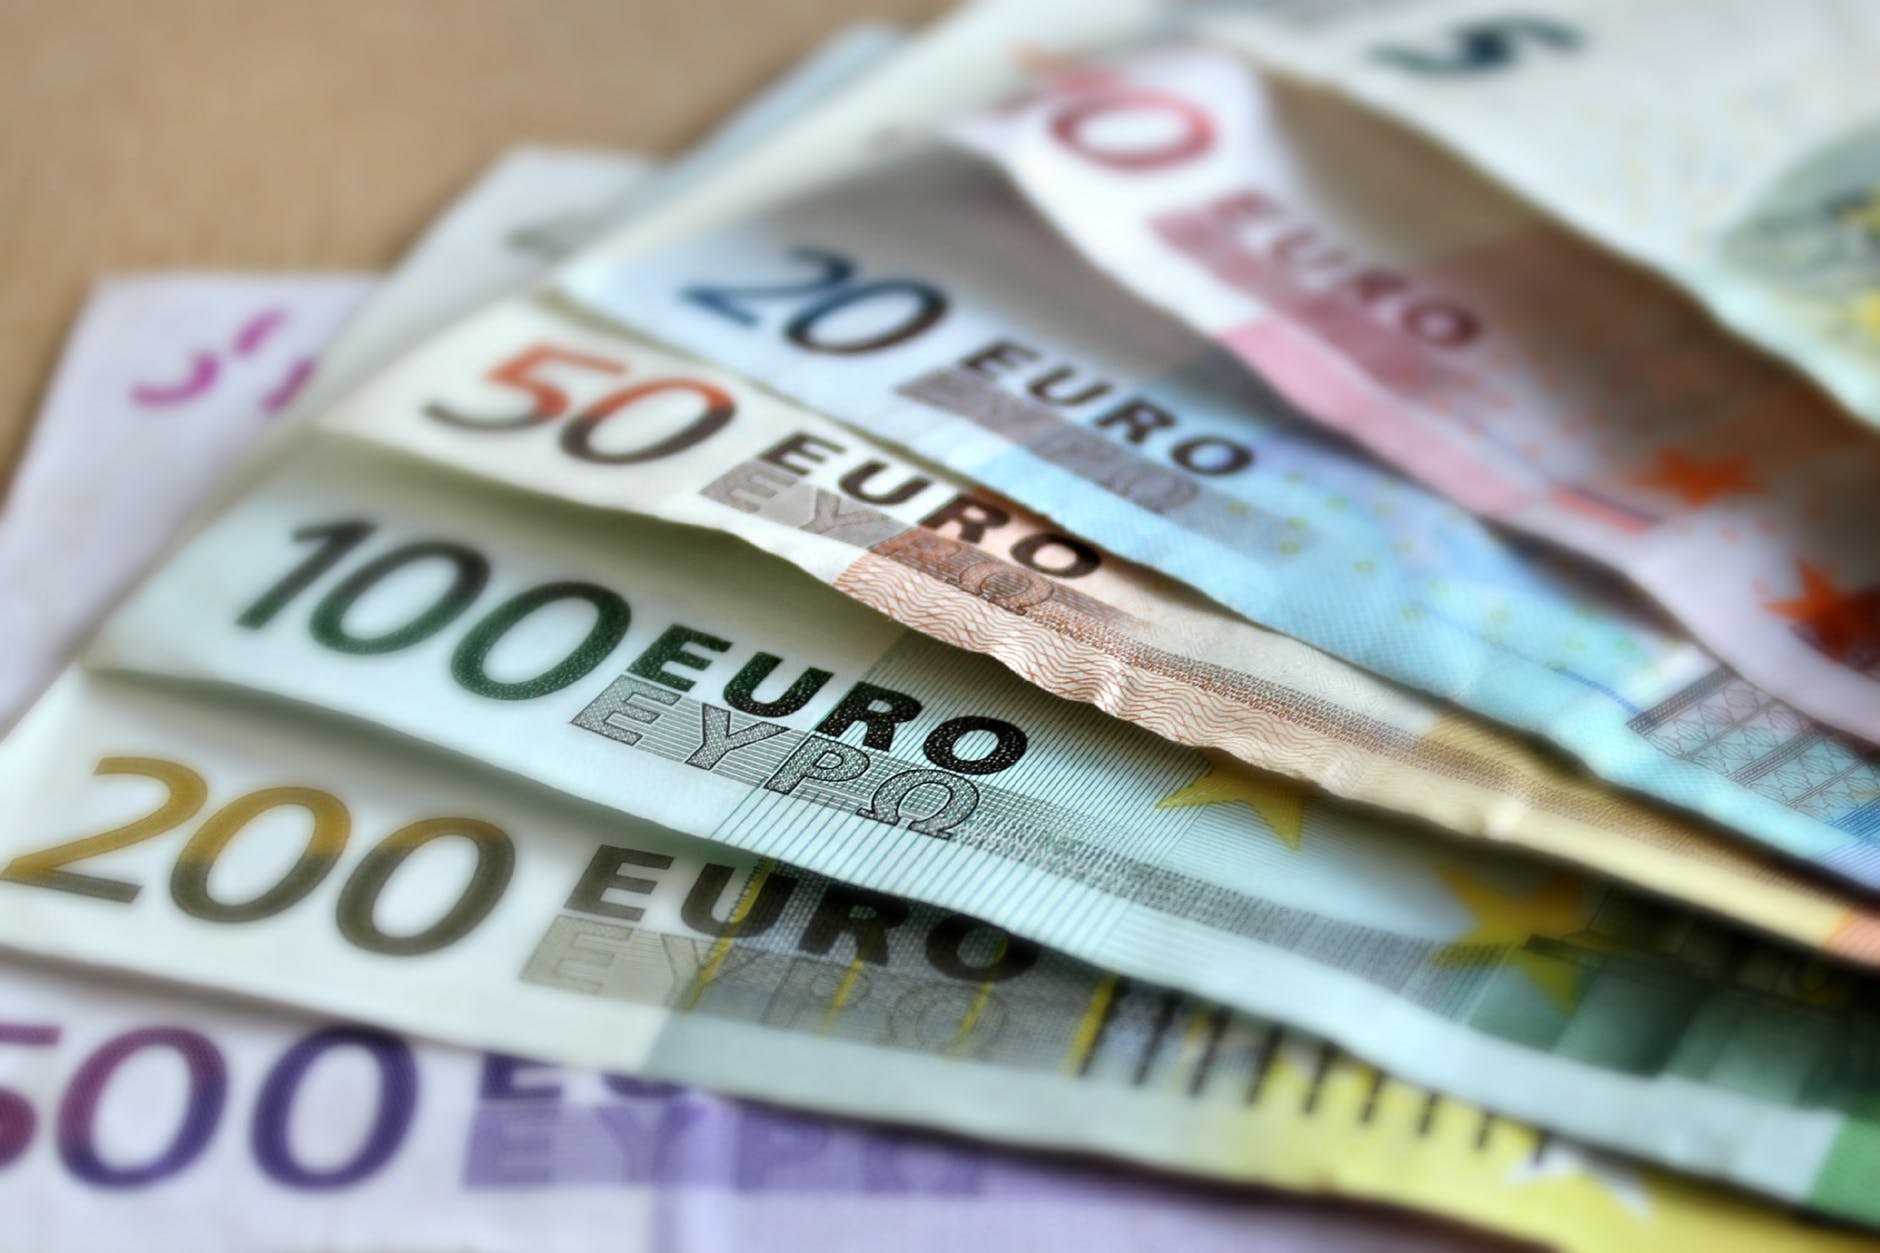 Hungary Aiming for 2030 to Adopt Euro